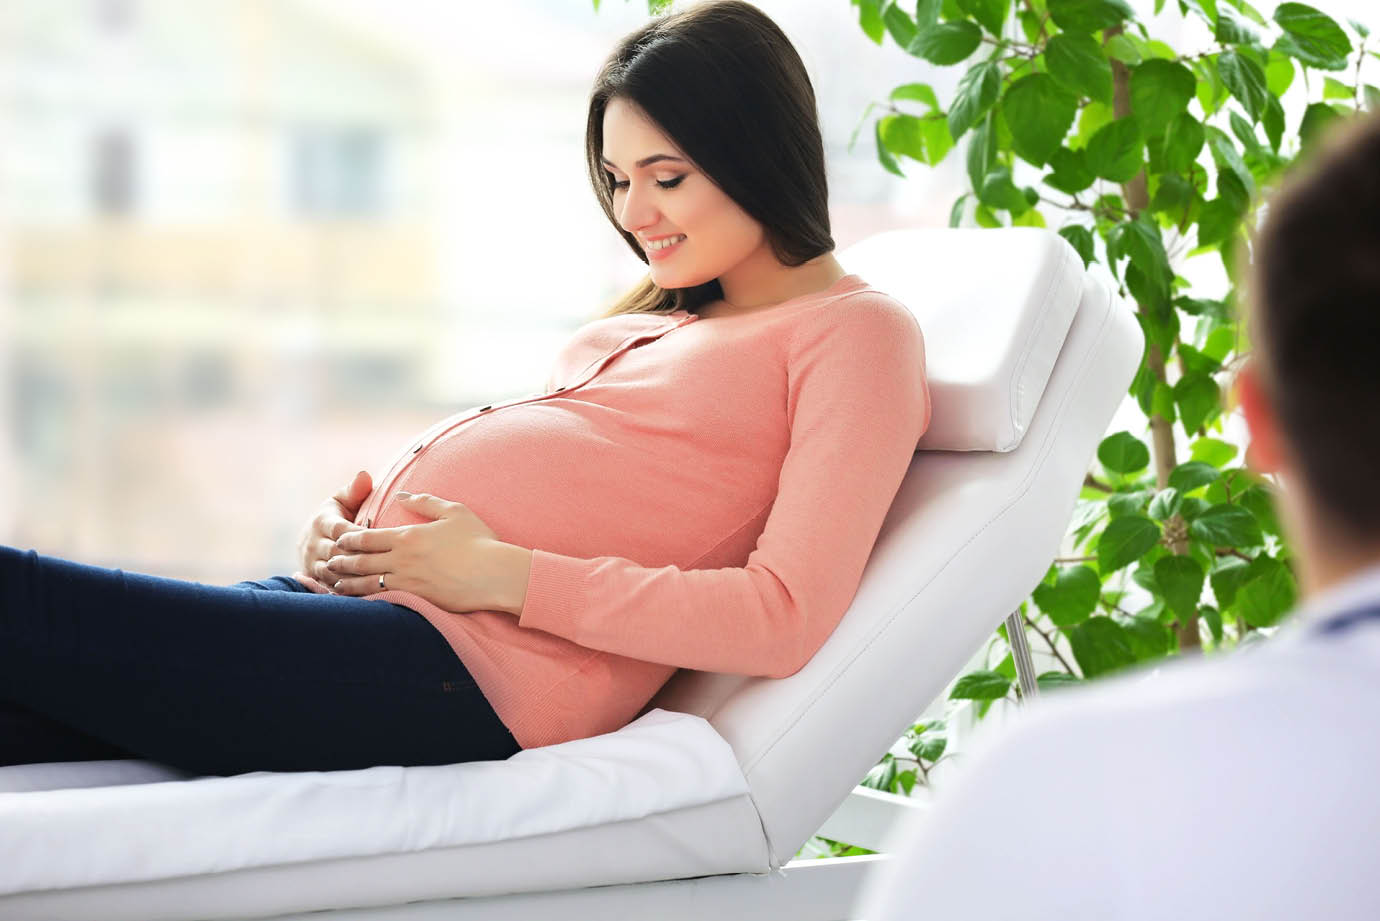 La solution CTG mobile polyvalente pour le suivi des grossesses à haut risque